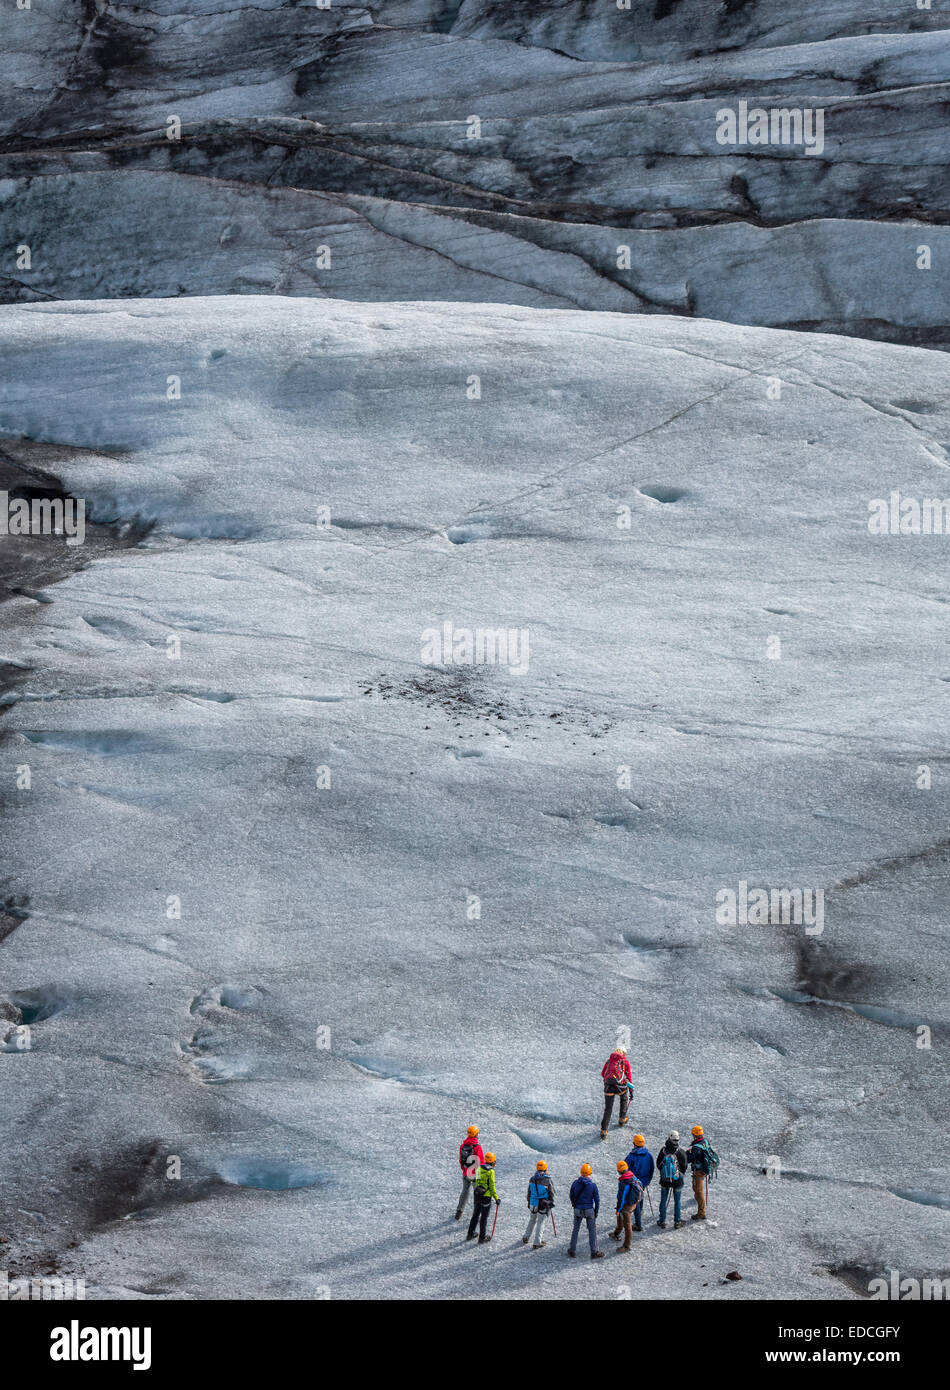 Camminando su Svinafellsjokull. Svinafellsjokull è un'uscita del ghiacciaio Vatnajokull il tappo di ghiaccio si trova nella parte orientale, Islanda Foto Stock